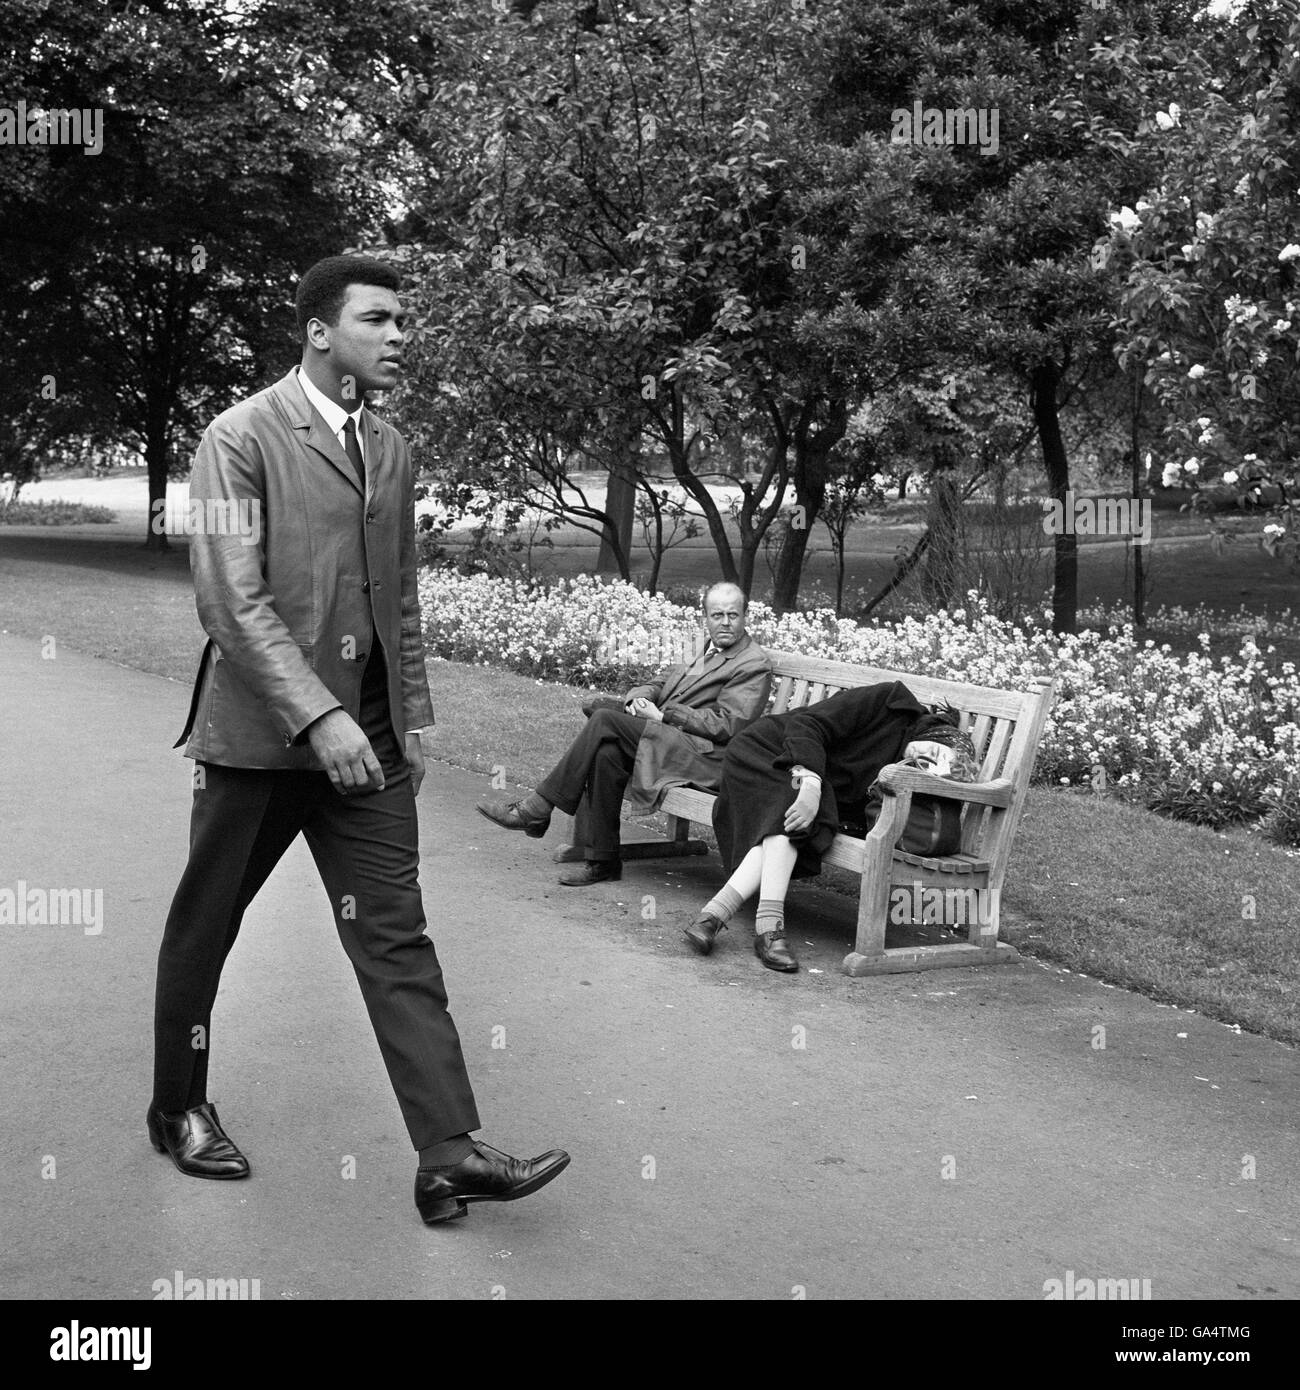 Un Muhammad Ali (Cassius Clay), fraîchement confronté, traverse un parc de Londres le matin après avoir battu le challenger Henry Cooper dans le World Title bout au stade Highbury d'Arsenal. Le combat s'est terminé par un arrêt au 6ème tour pour Muhammad Ali. Deux Londoniens endormis (sur banc) semblent être anonymes à la présence du Champion du monde de poids lourd. Banque D'Images